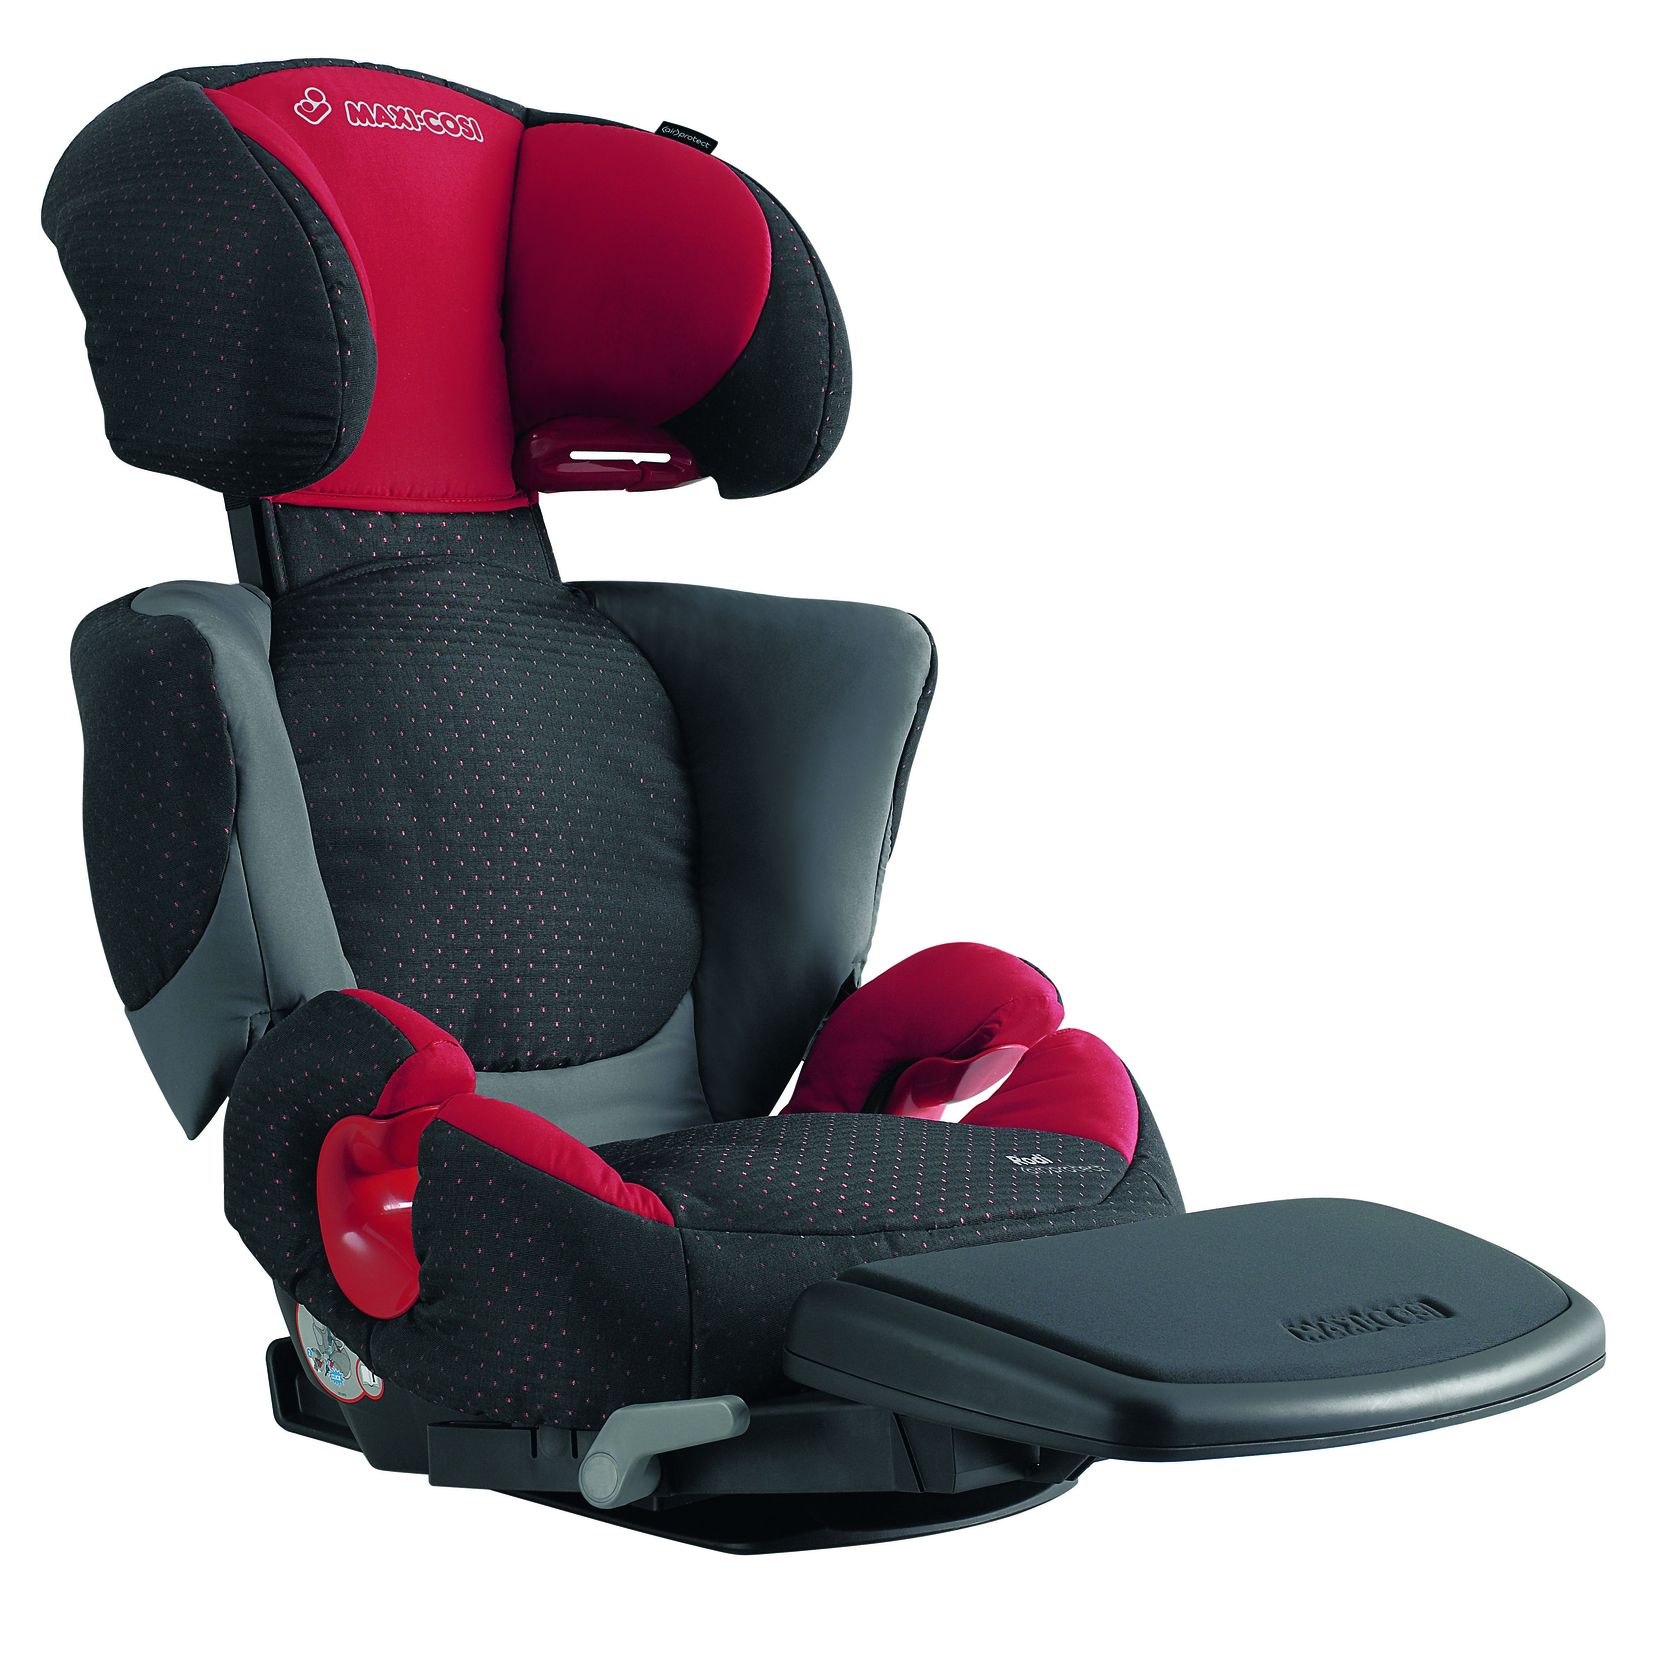 מקום לבטיחות: מושבי רכב עם מרווח רגליים מורחב לילדים שגדלים